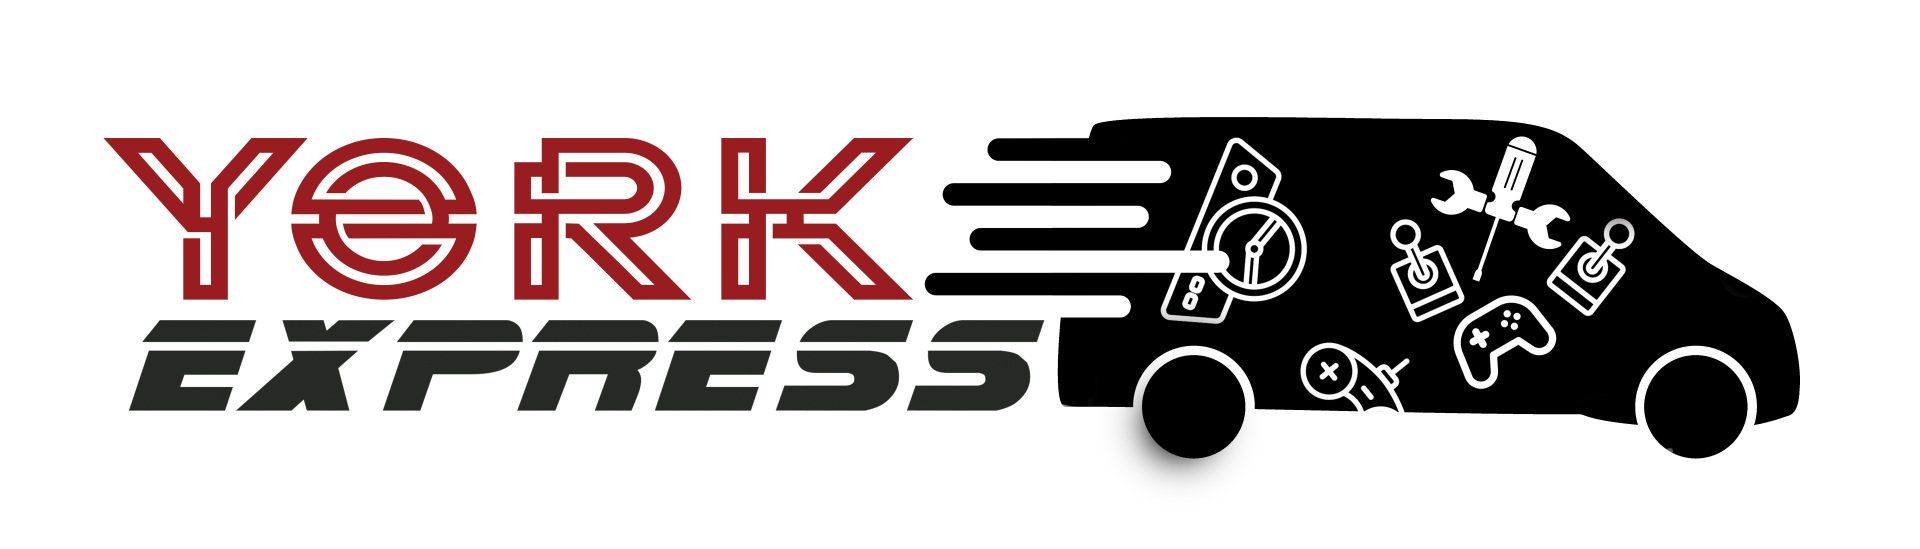 York-Express-logo